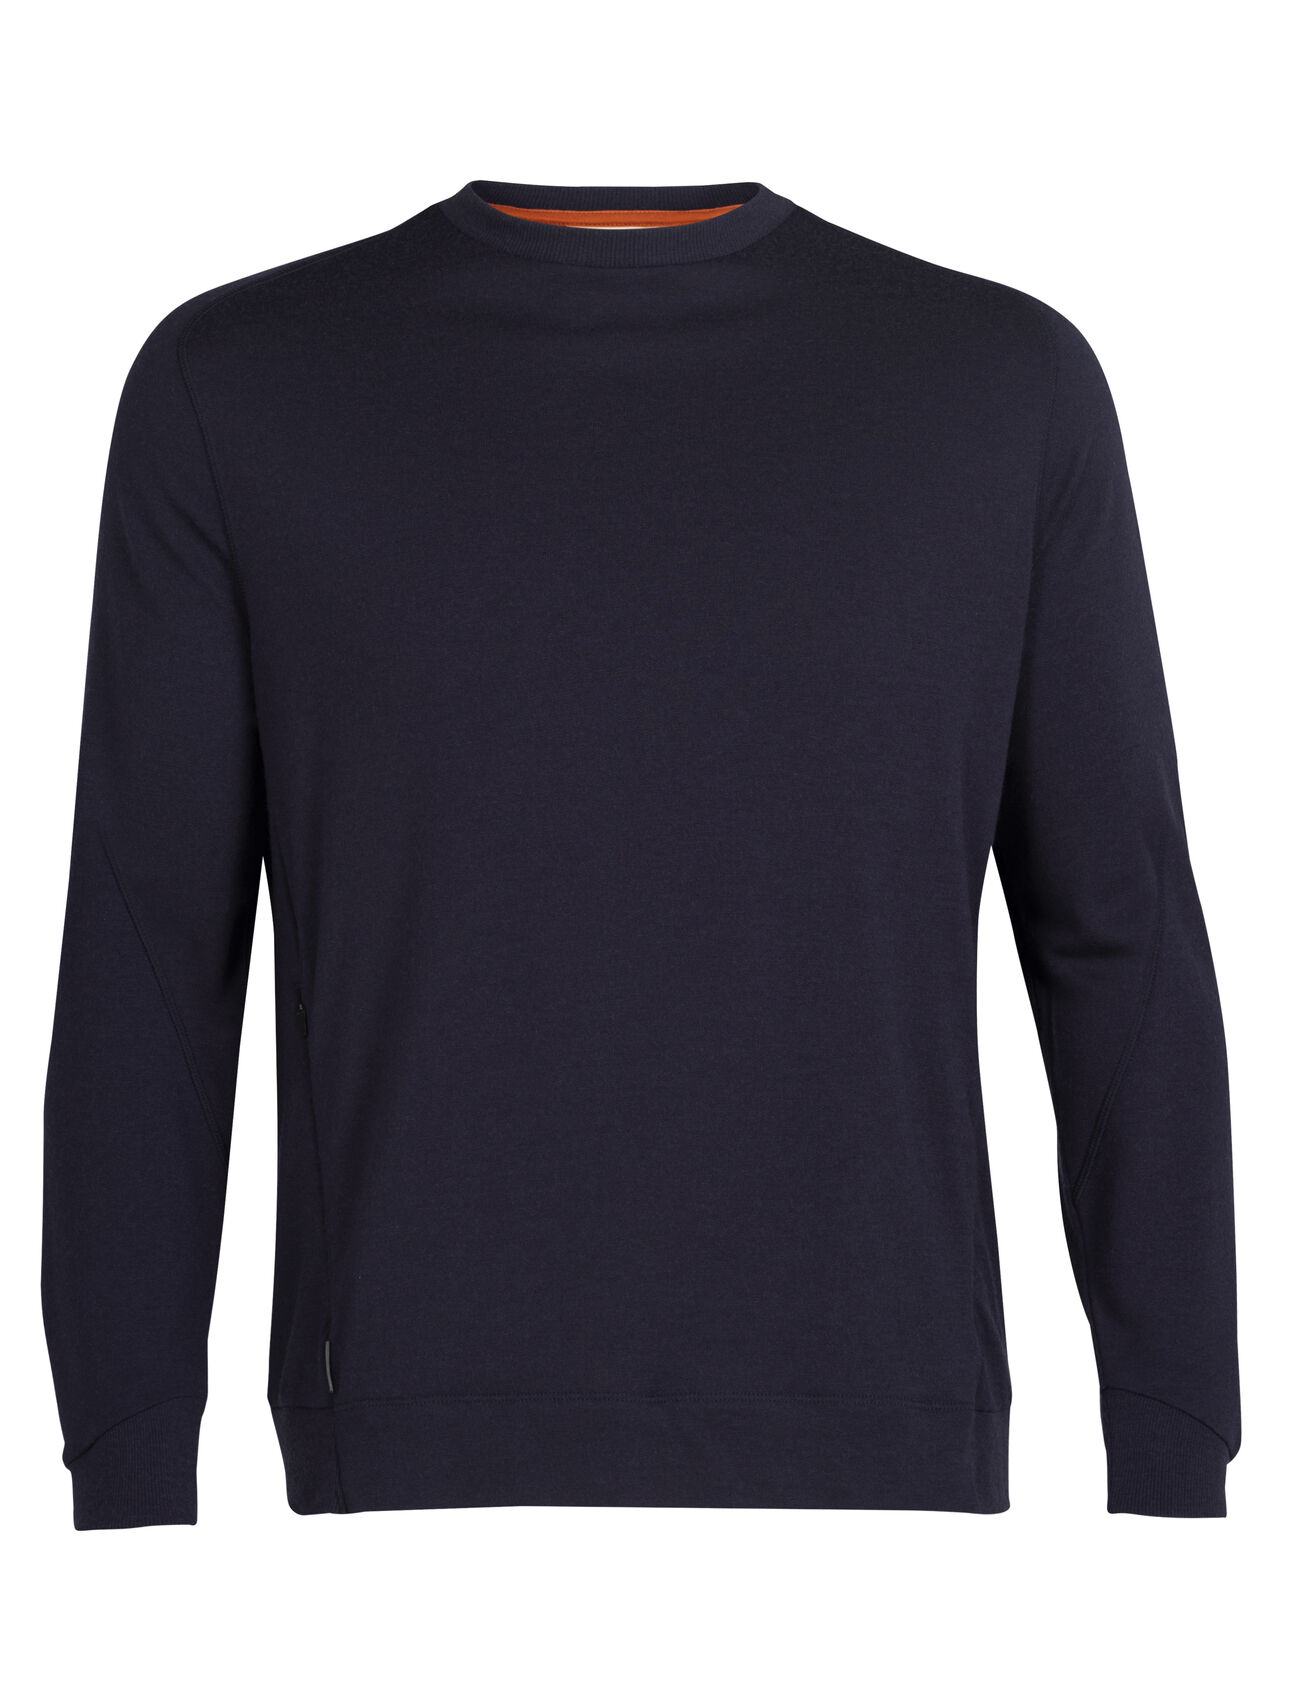 Merino Sweatshirt Herren Ein klassisches Rundhals-Sweatshirt aus 100% Merinowolle in French Terry, das Merino Sweatshirt kombiniert Komfort mit edlen, modernen Details.